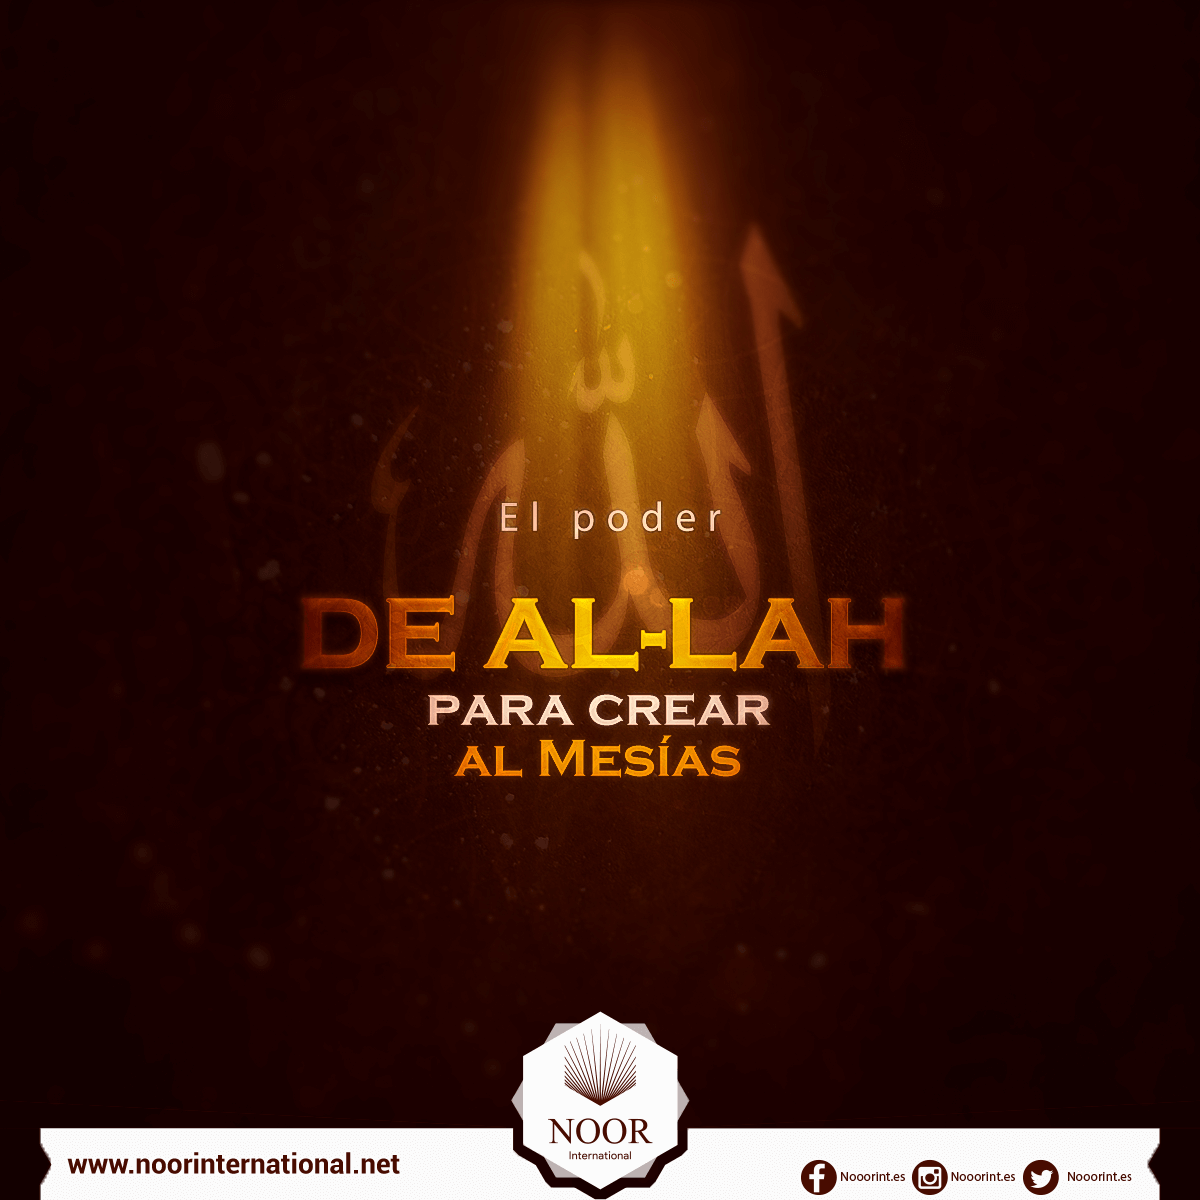 El poder de Al-lah para crear al Mesías